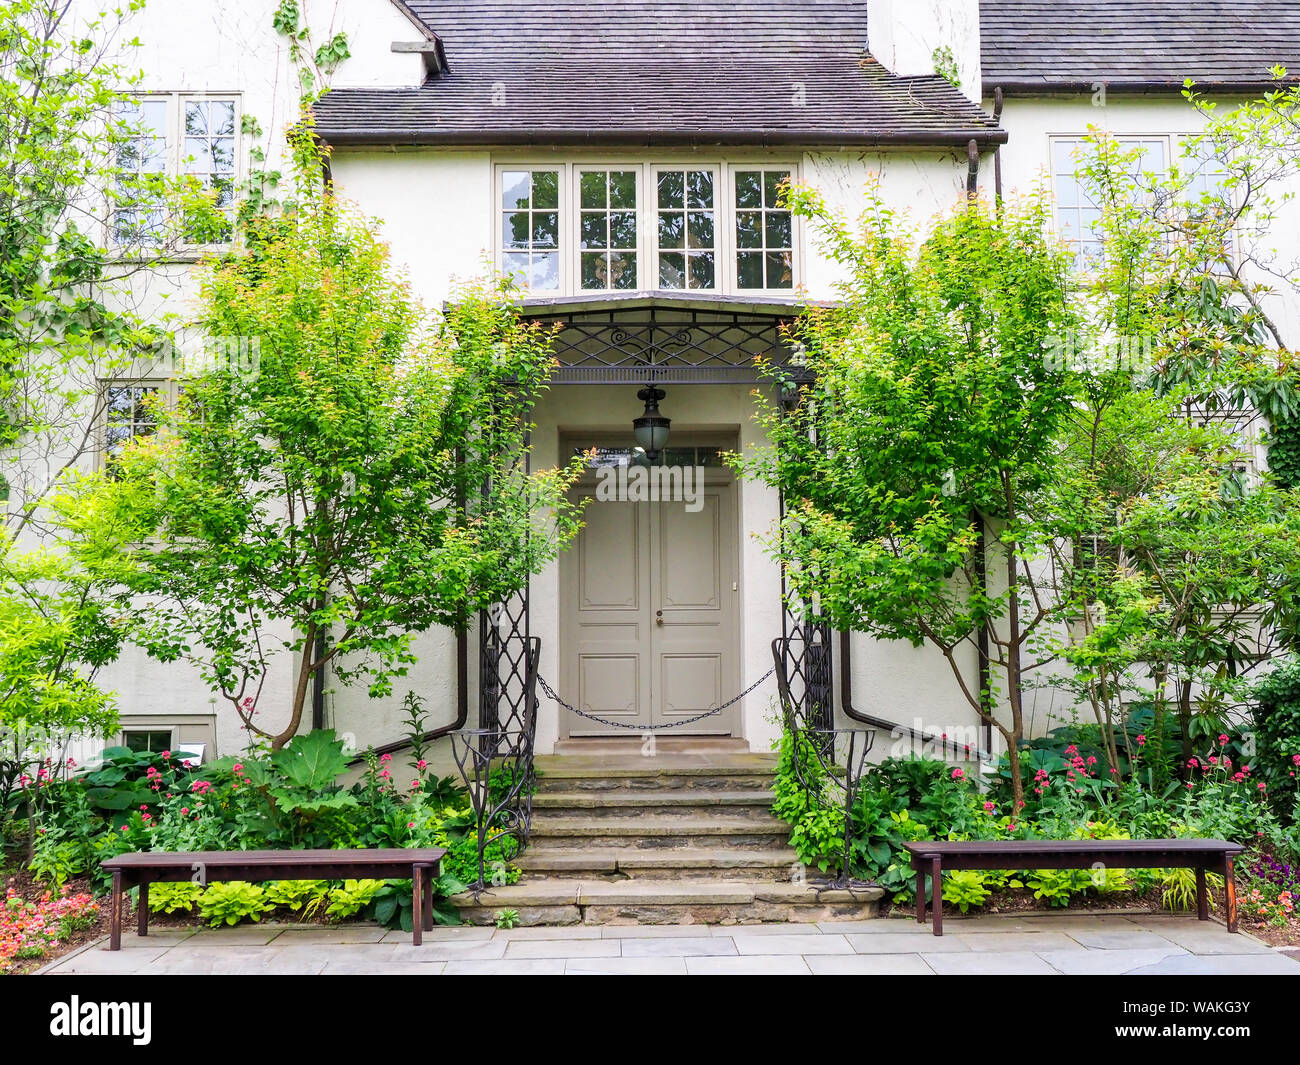 USA, Pennsylvania. Beautiful entryway to a garden house. Stock Photo